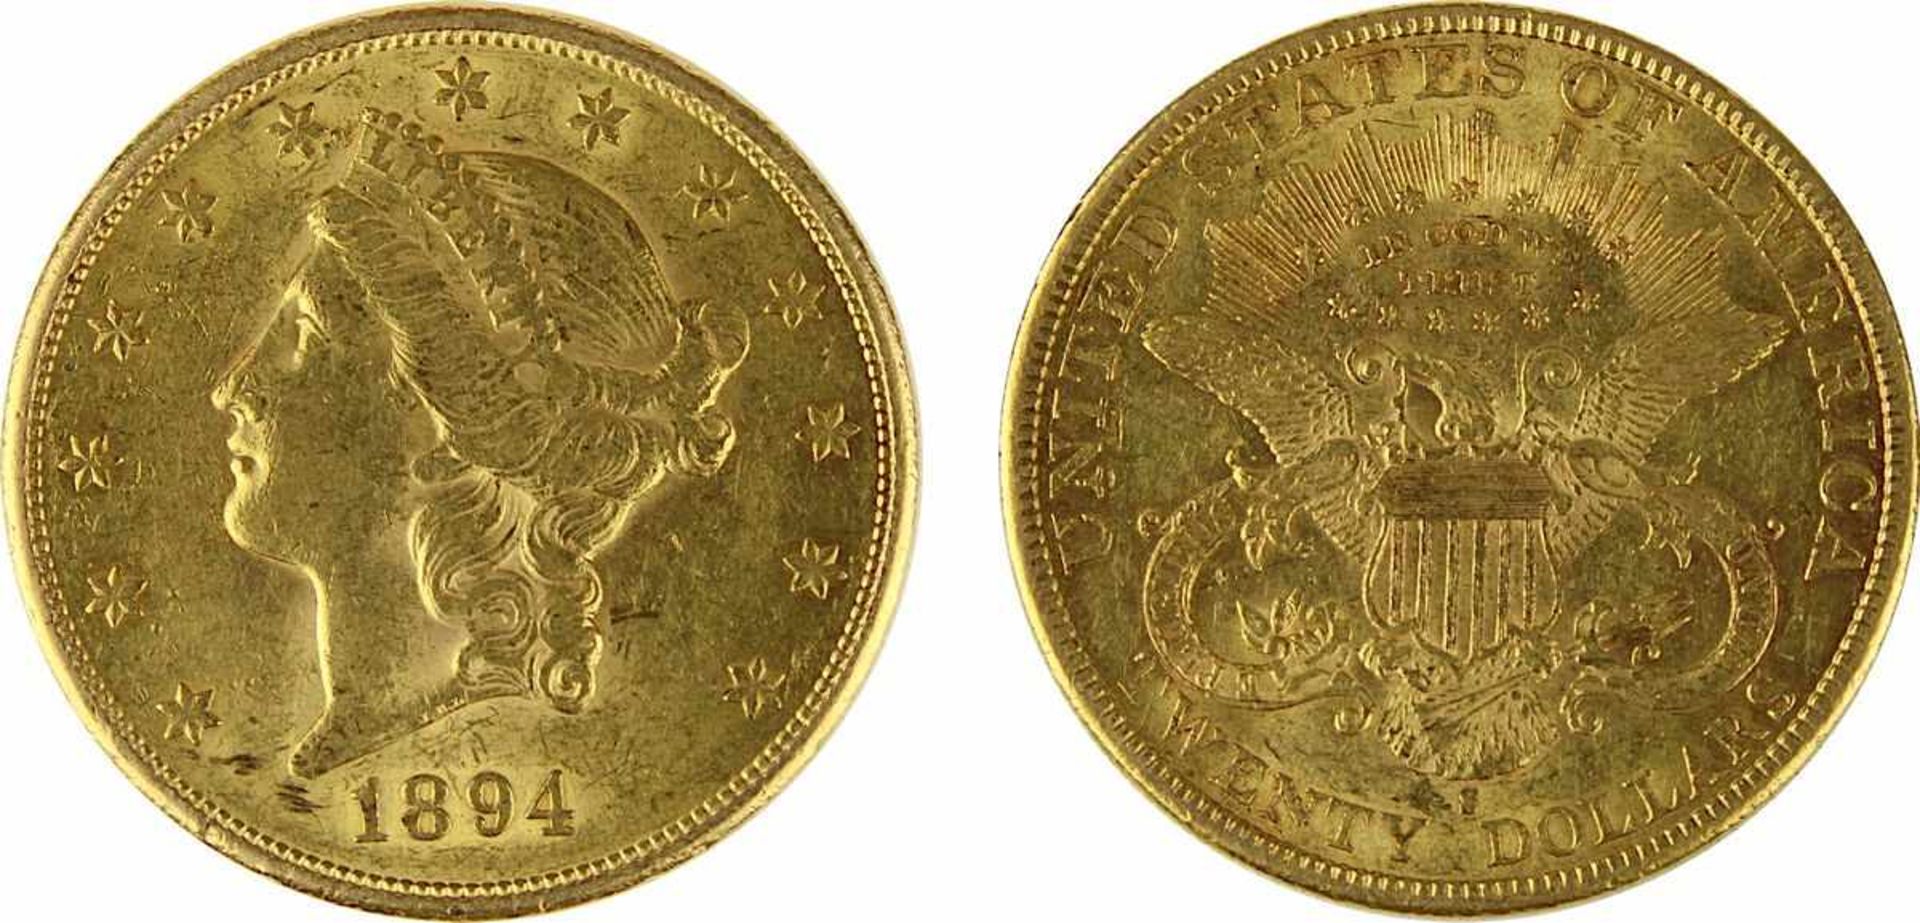 Goldmünze zu 20 Dollar, USA 1894, 900er Gold, Gewicht 1 Unze Feingold, Coroned Head / Eagle,